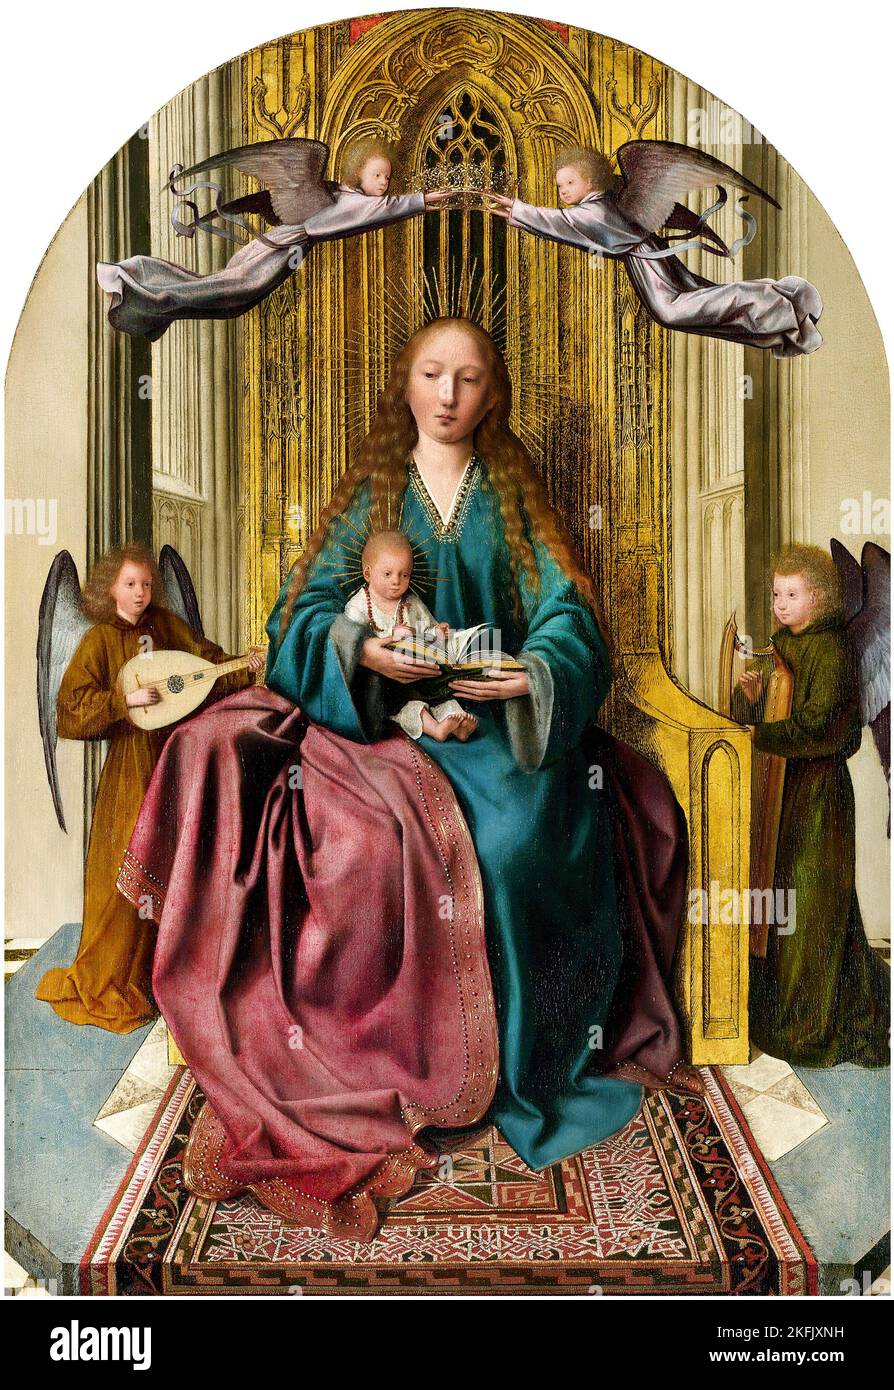 Quinten Metsys; die Jungfrau und das Kind auf dem Thron, mit vier Engeln; um 1493-1497; Öl auf Holz; Nationalgalerie, London, Großbritannien. Stockfoto